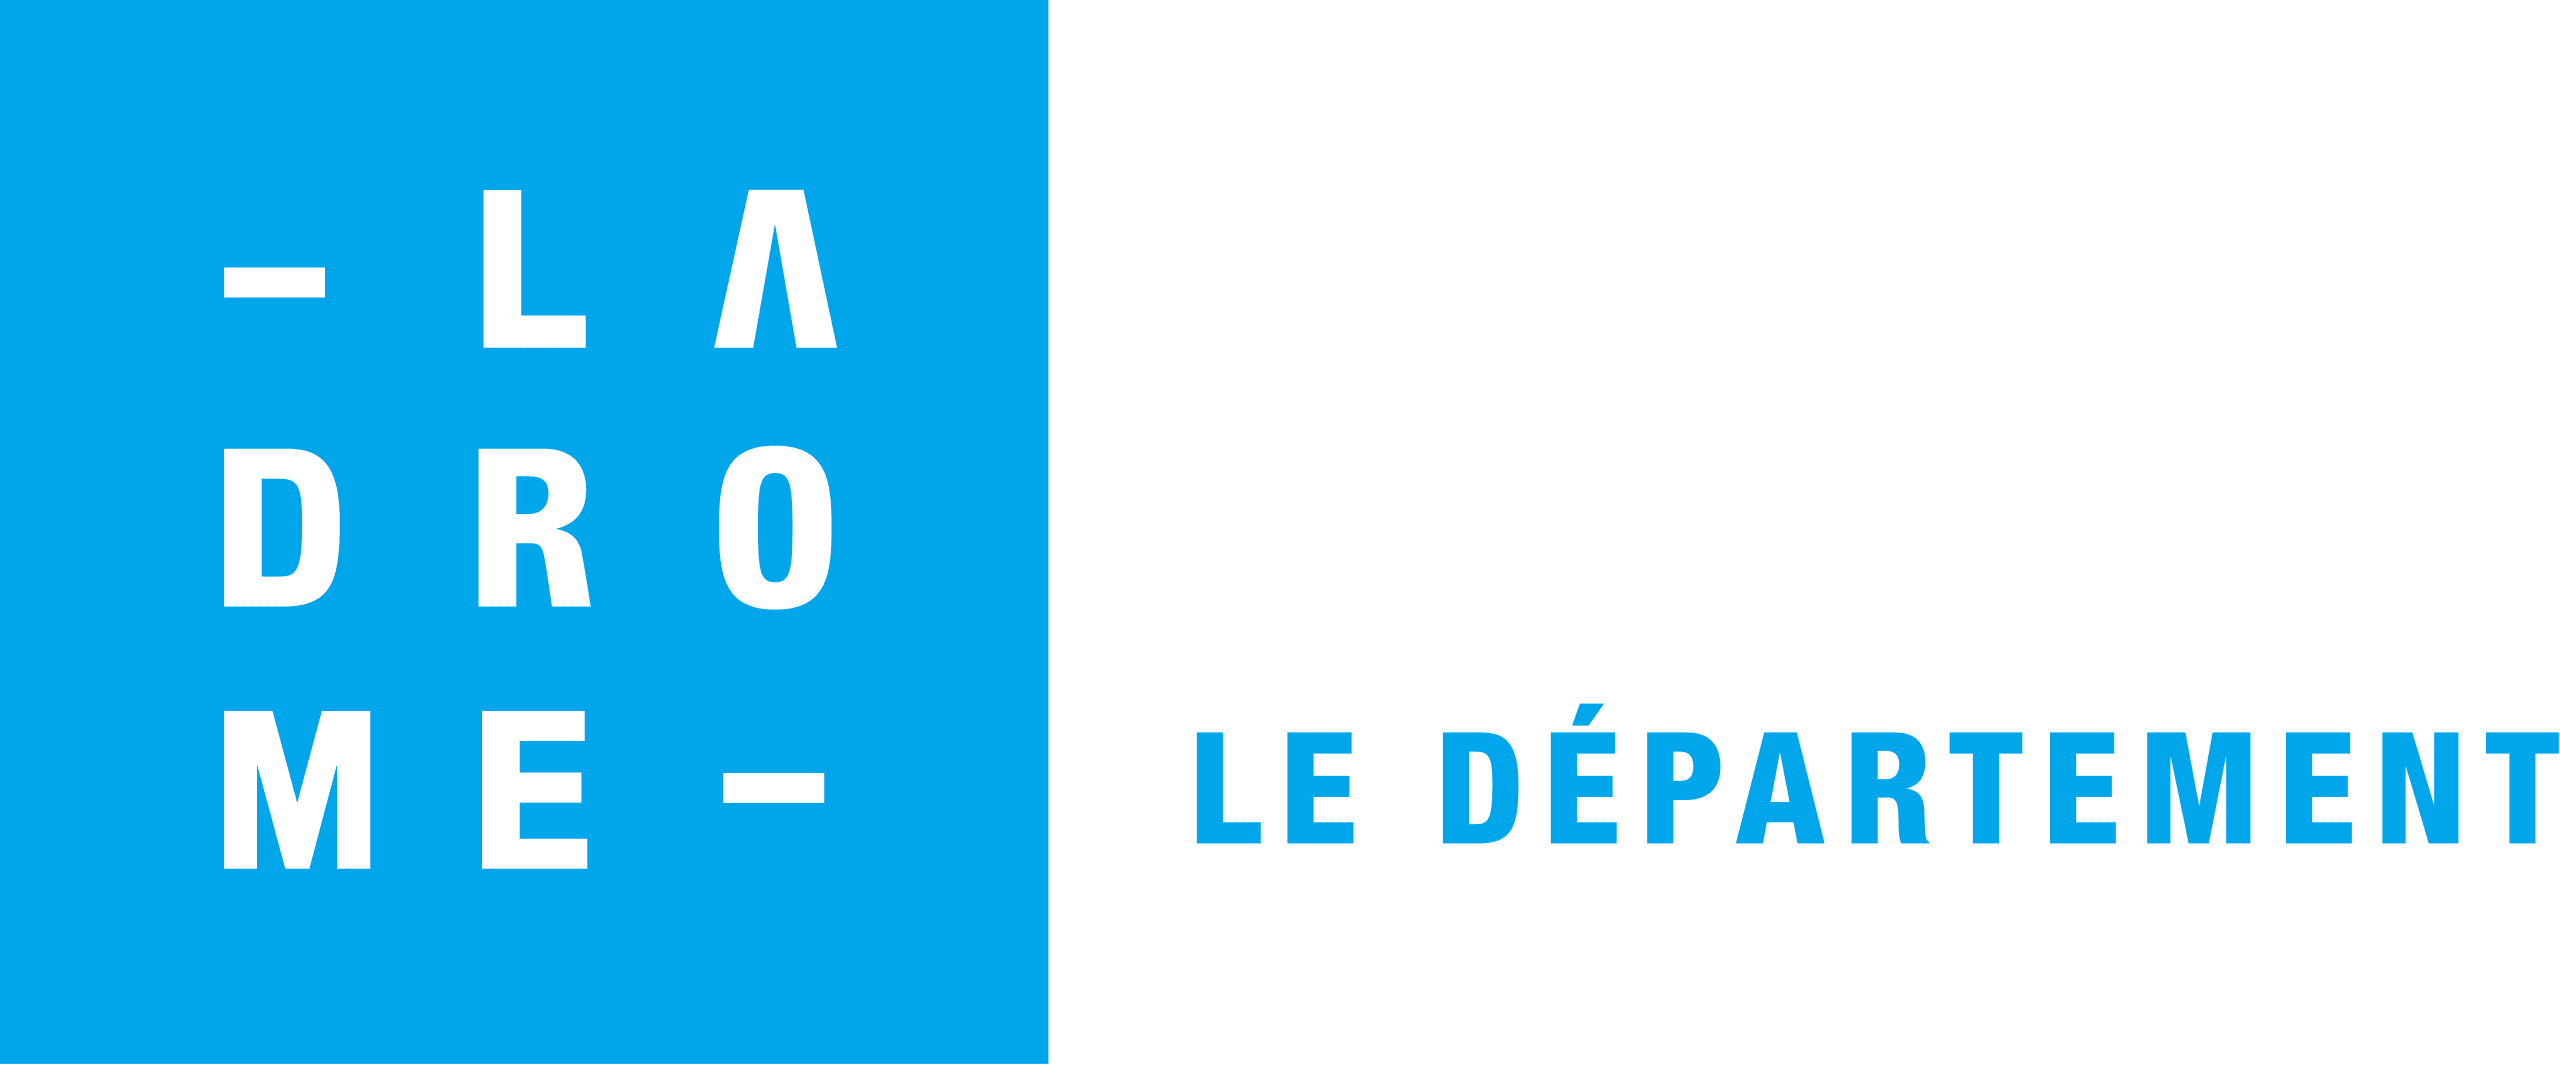 Département Drôme